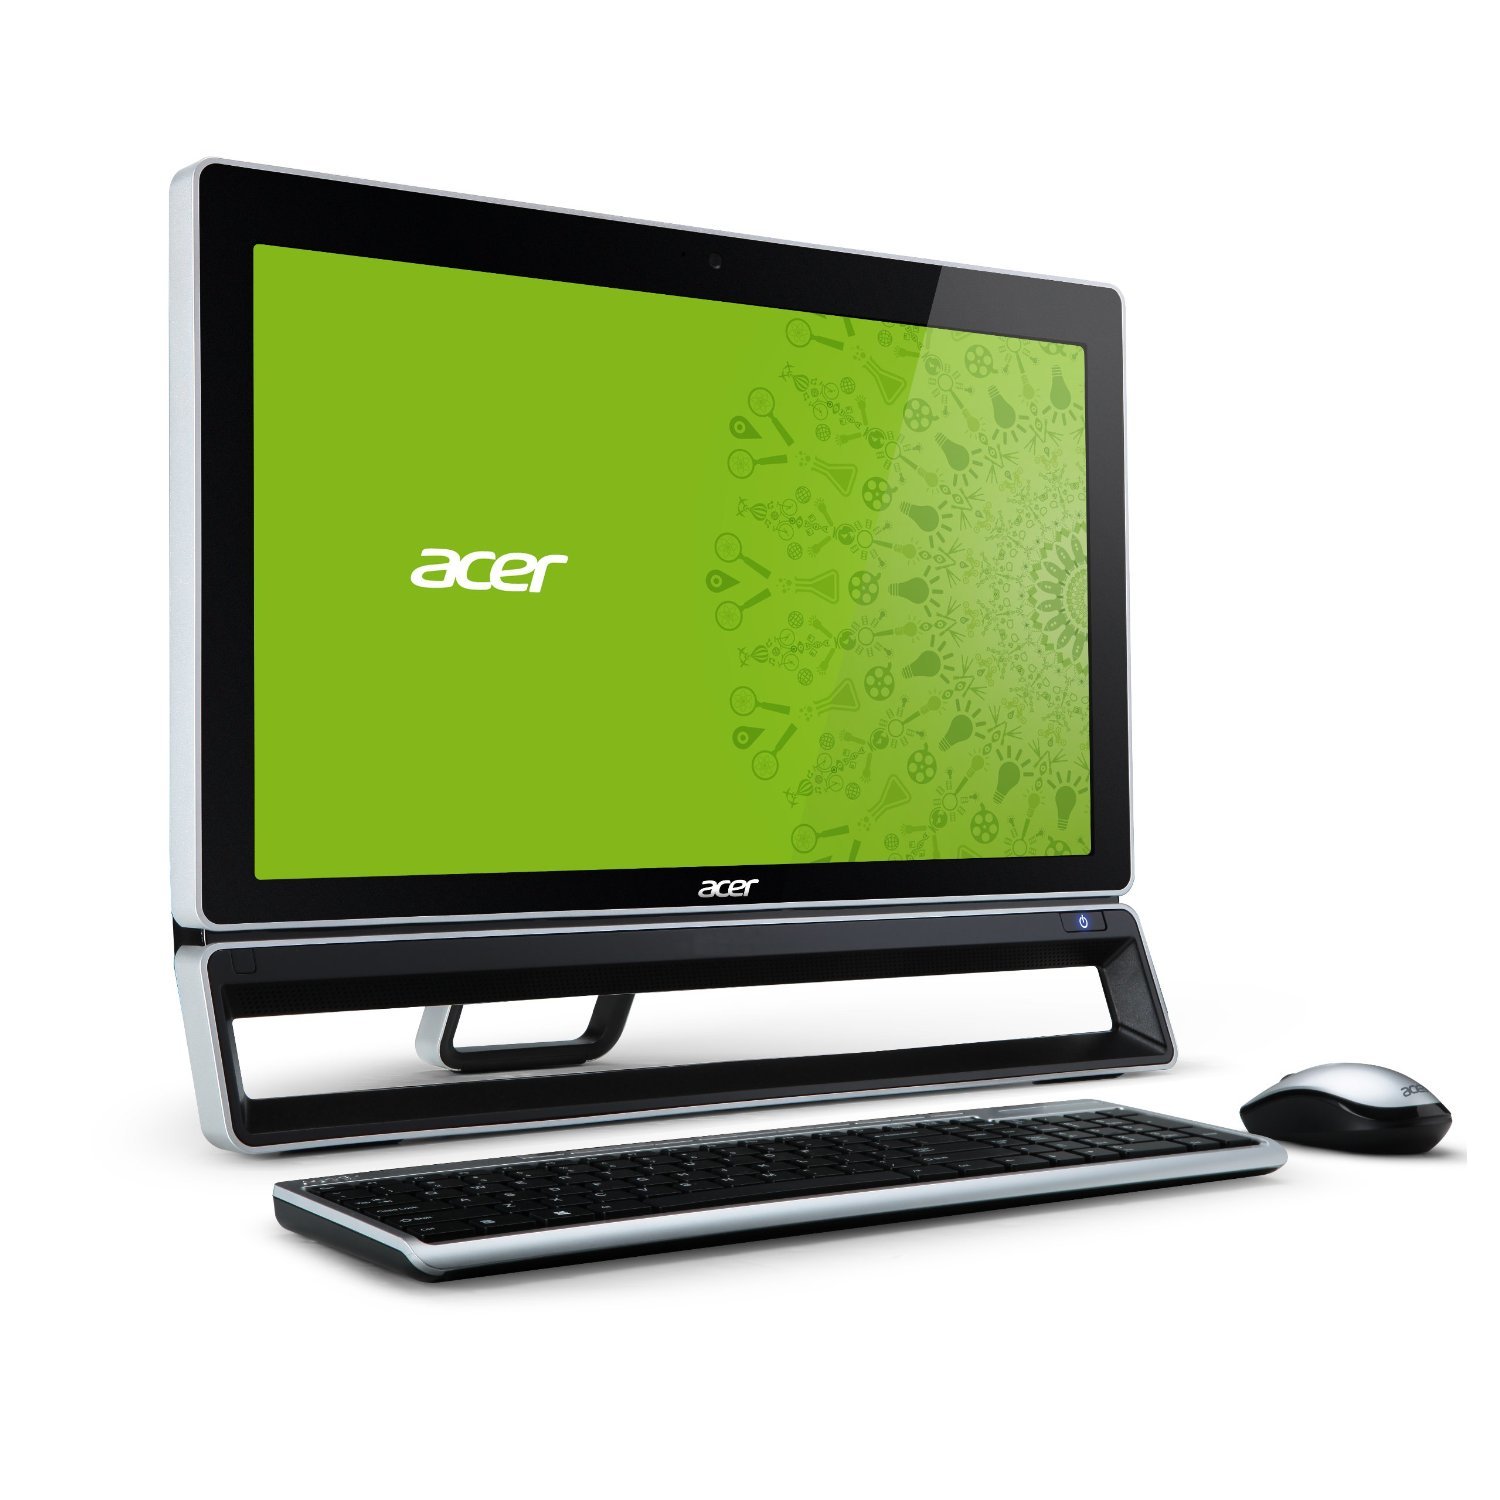 Моноблоки acer москва. Acer Aspire zs600. Моноблок Acer zs600. Acer Aspire z600 моноблок. Моноблок Acer Aspire z3-605.